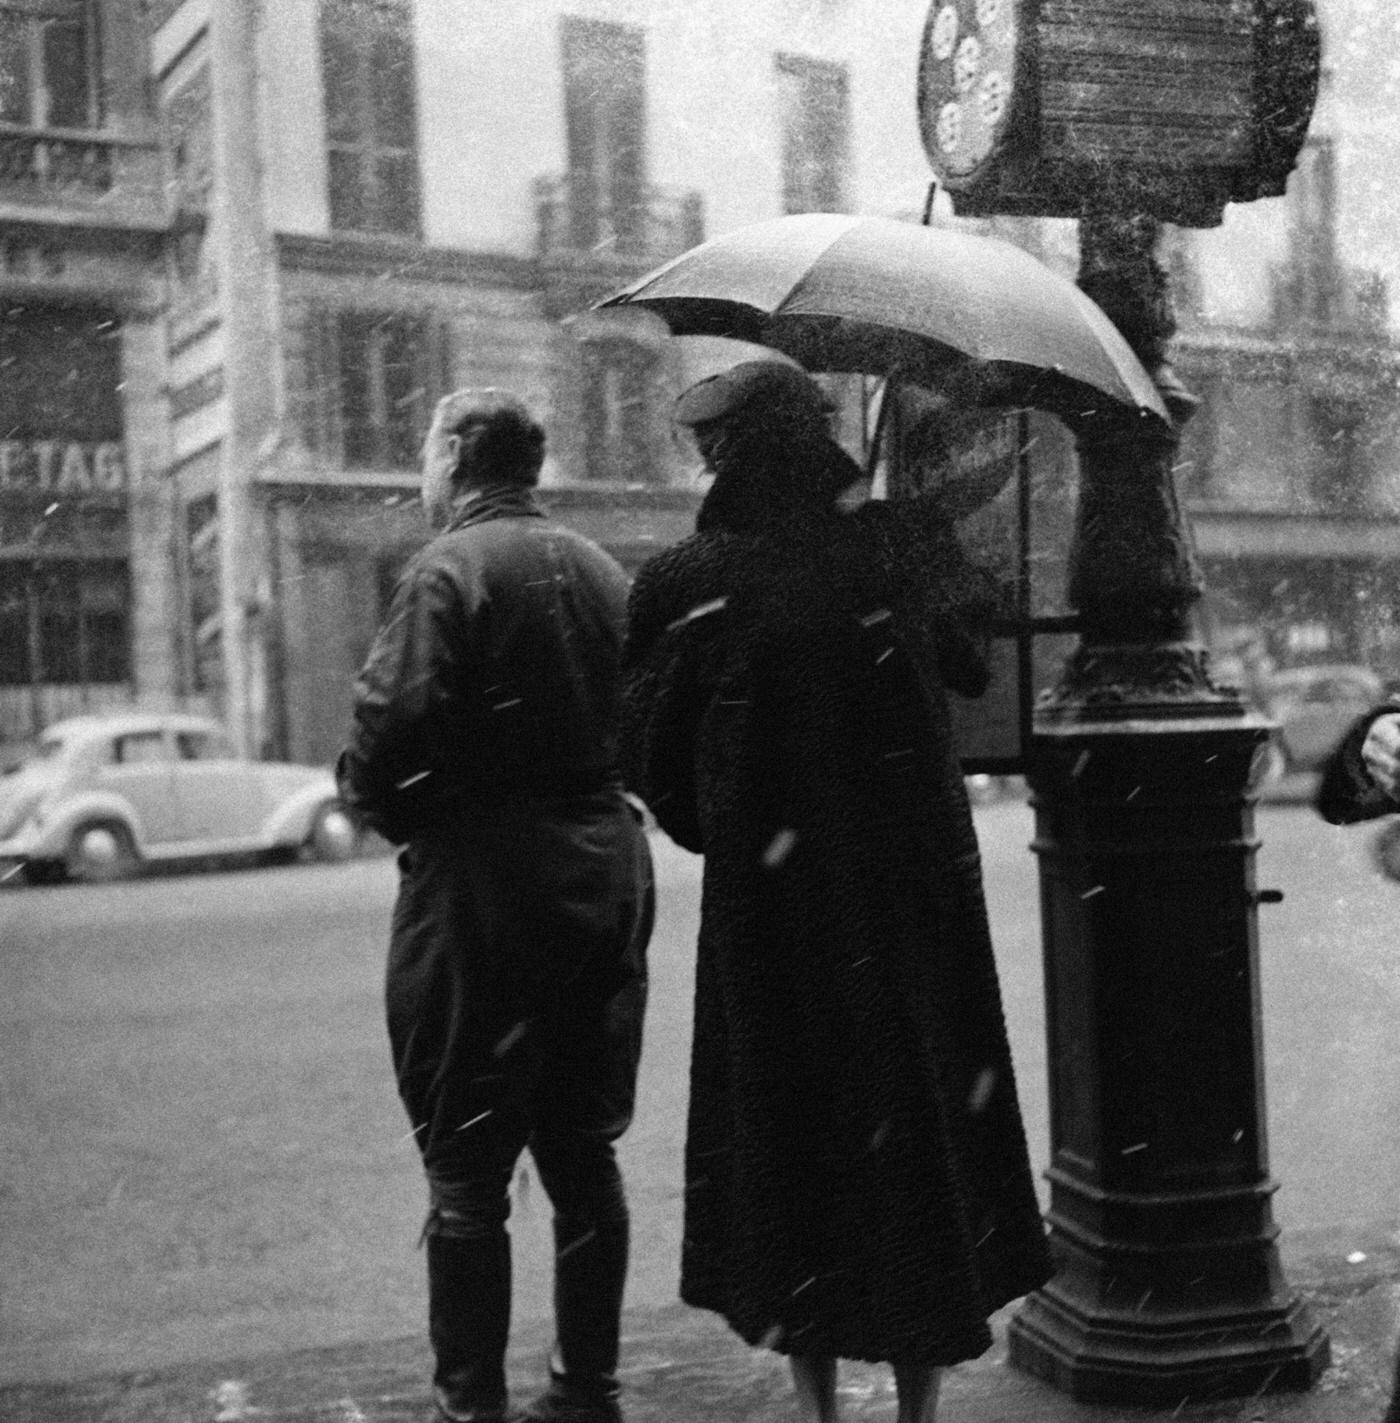 Parisians Waiting At A Bus Stop Under Snow, Paris, 1954.